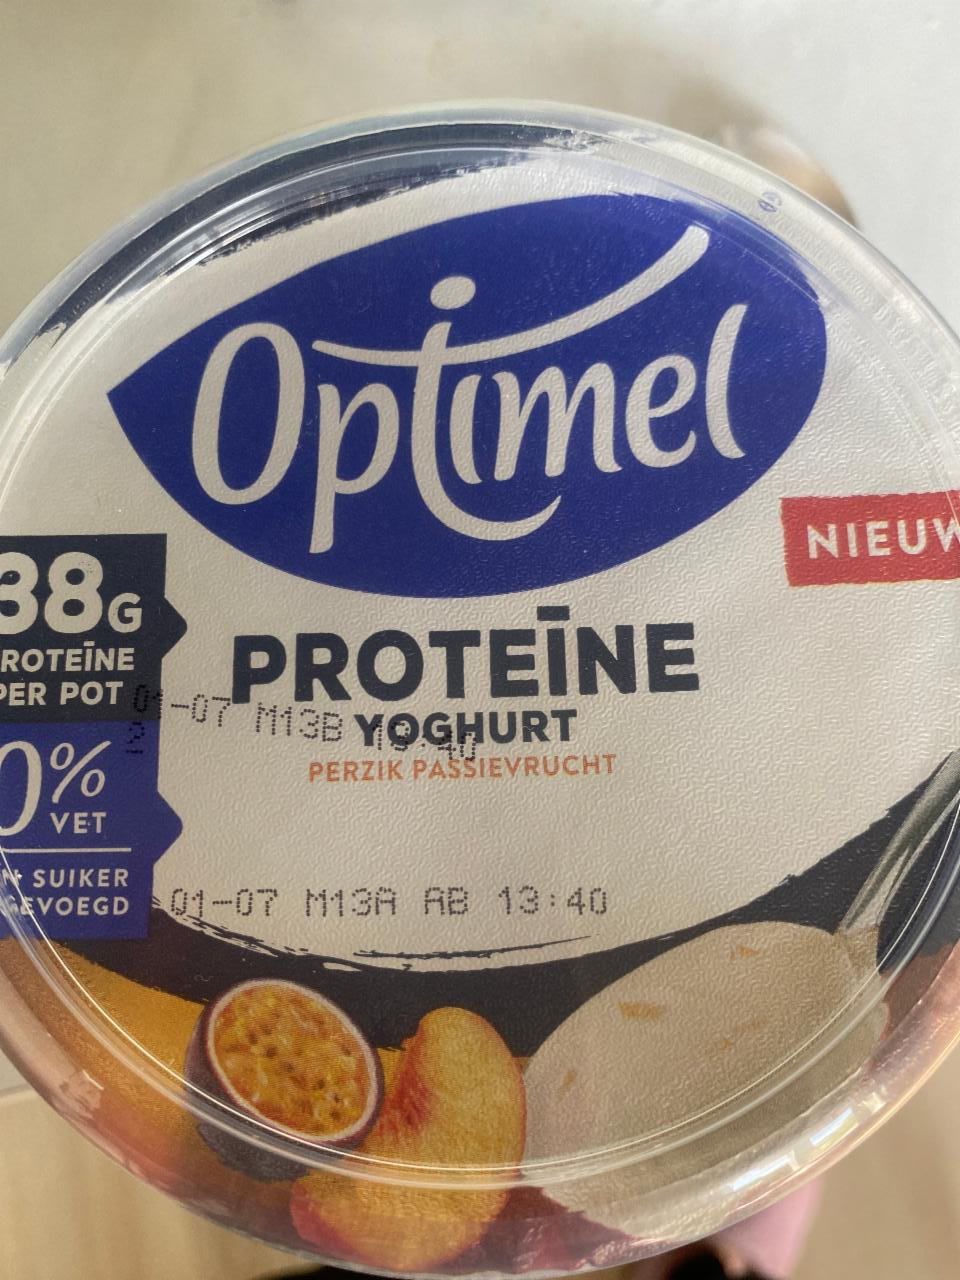 Fotografie - Proteine Yoghurt Perzik Passievrucht Optimel